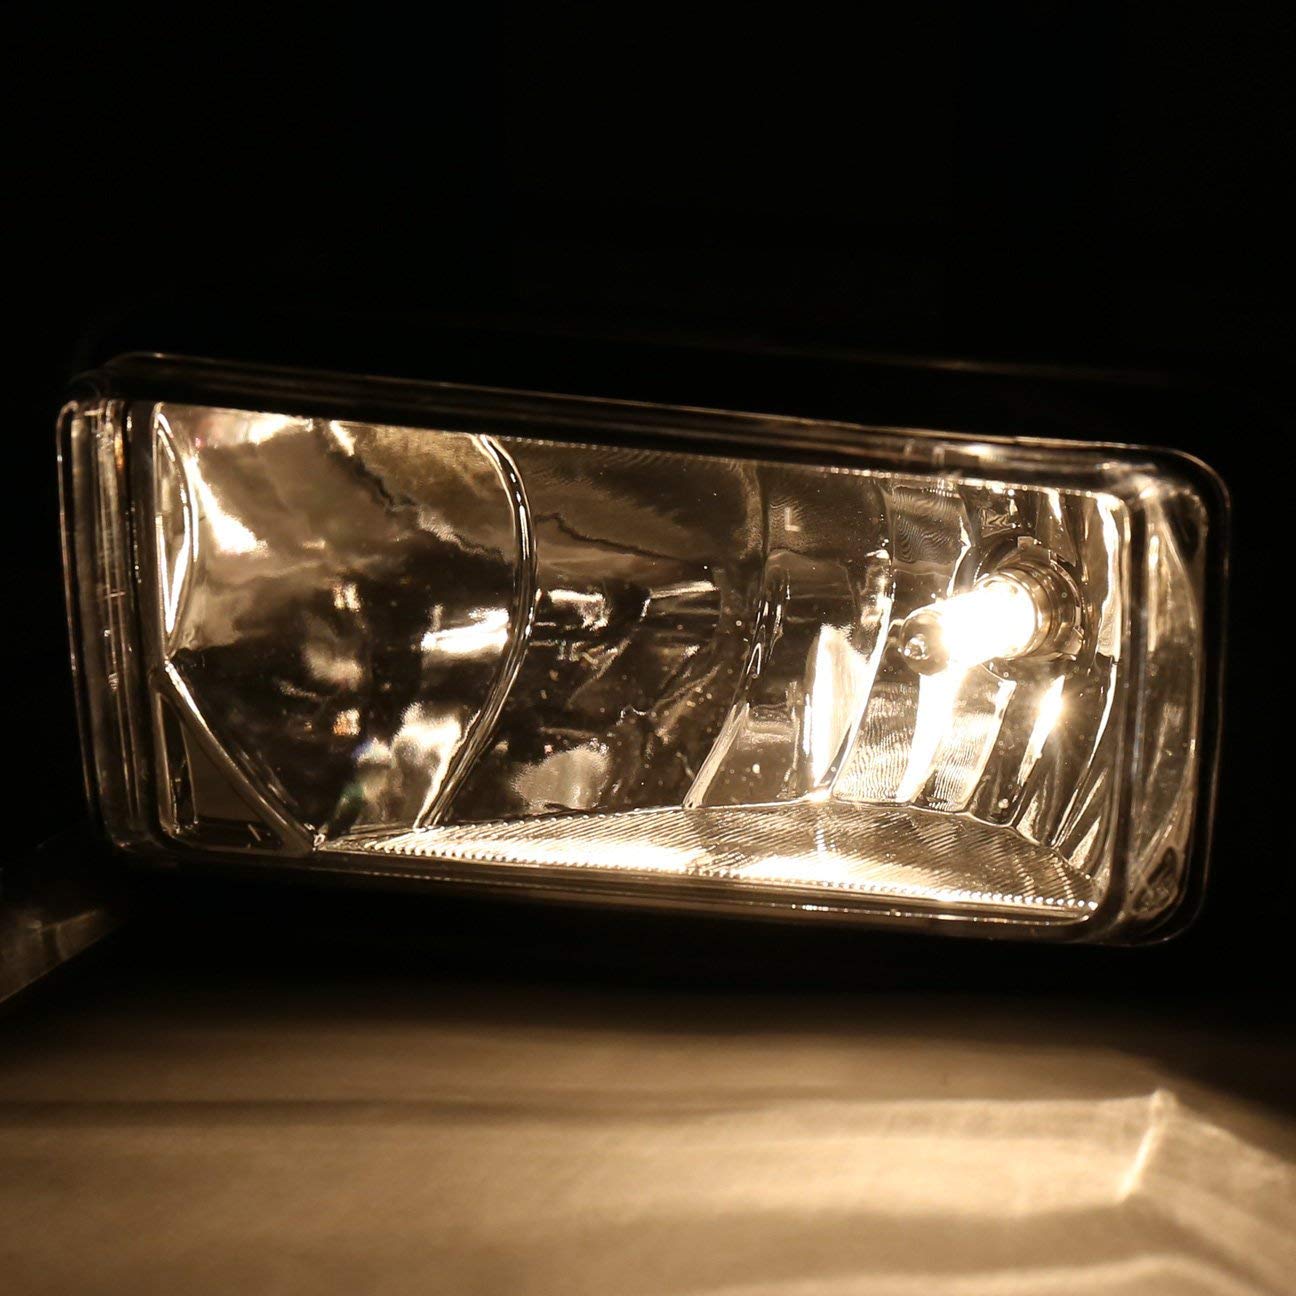 Luces antiniebla delanteras de conducción Luces antiniebla para Gmc Yukon para Chevy Suburban 15-16